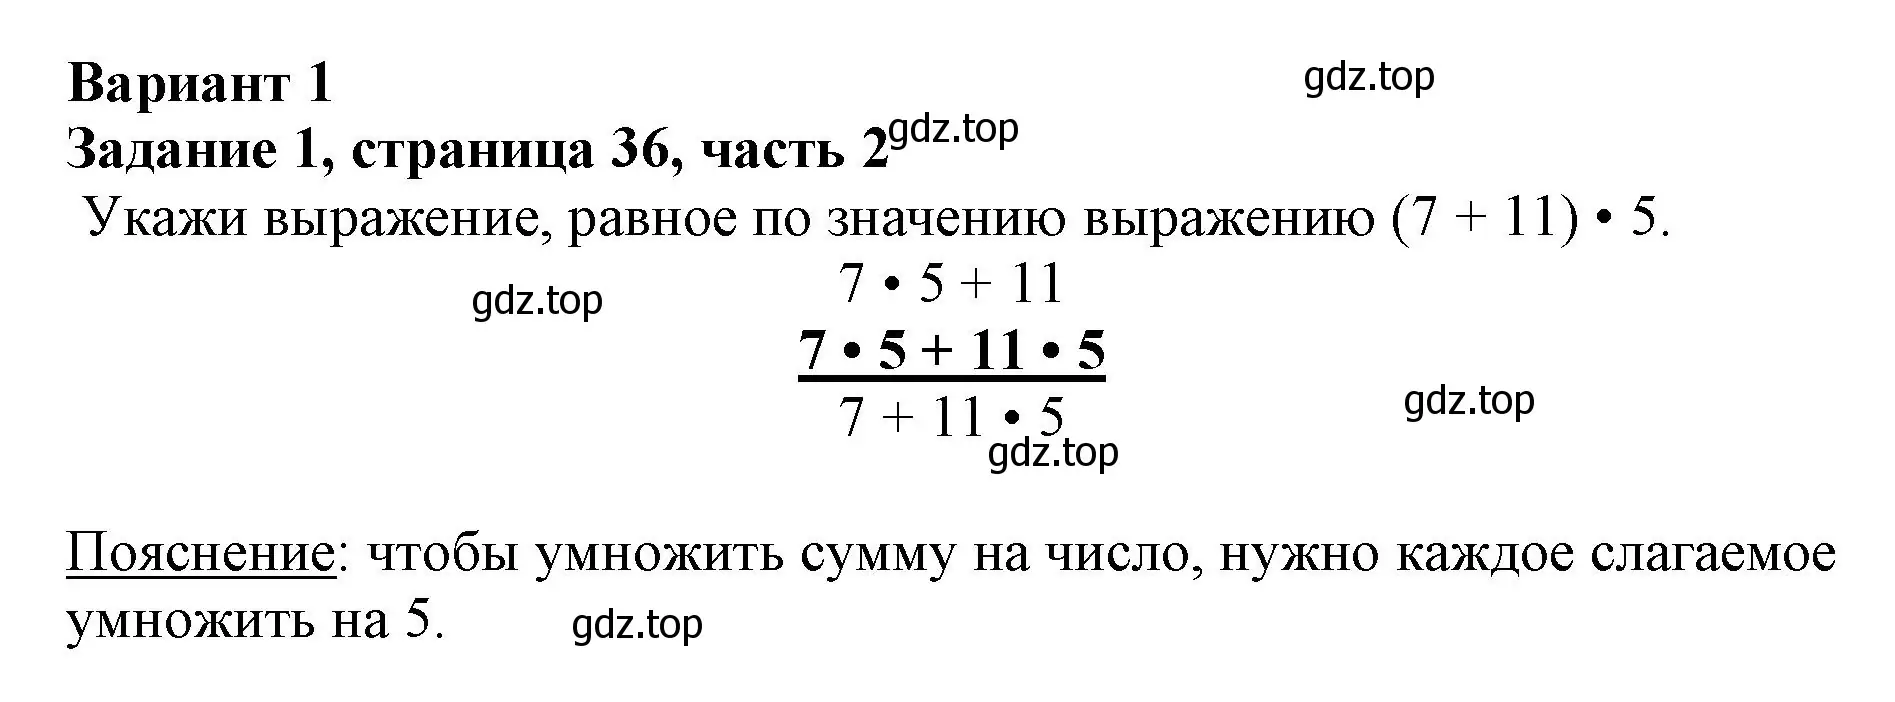 Решение номер 1 (страница 36) гдз по математике 3 класс Моро, Бантова, учебник 2 часть